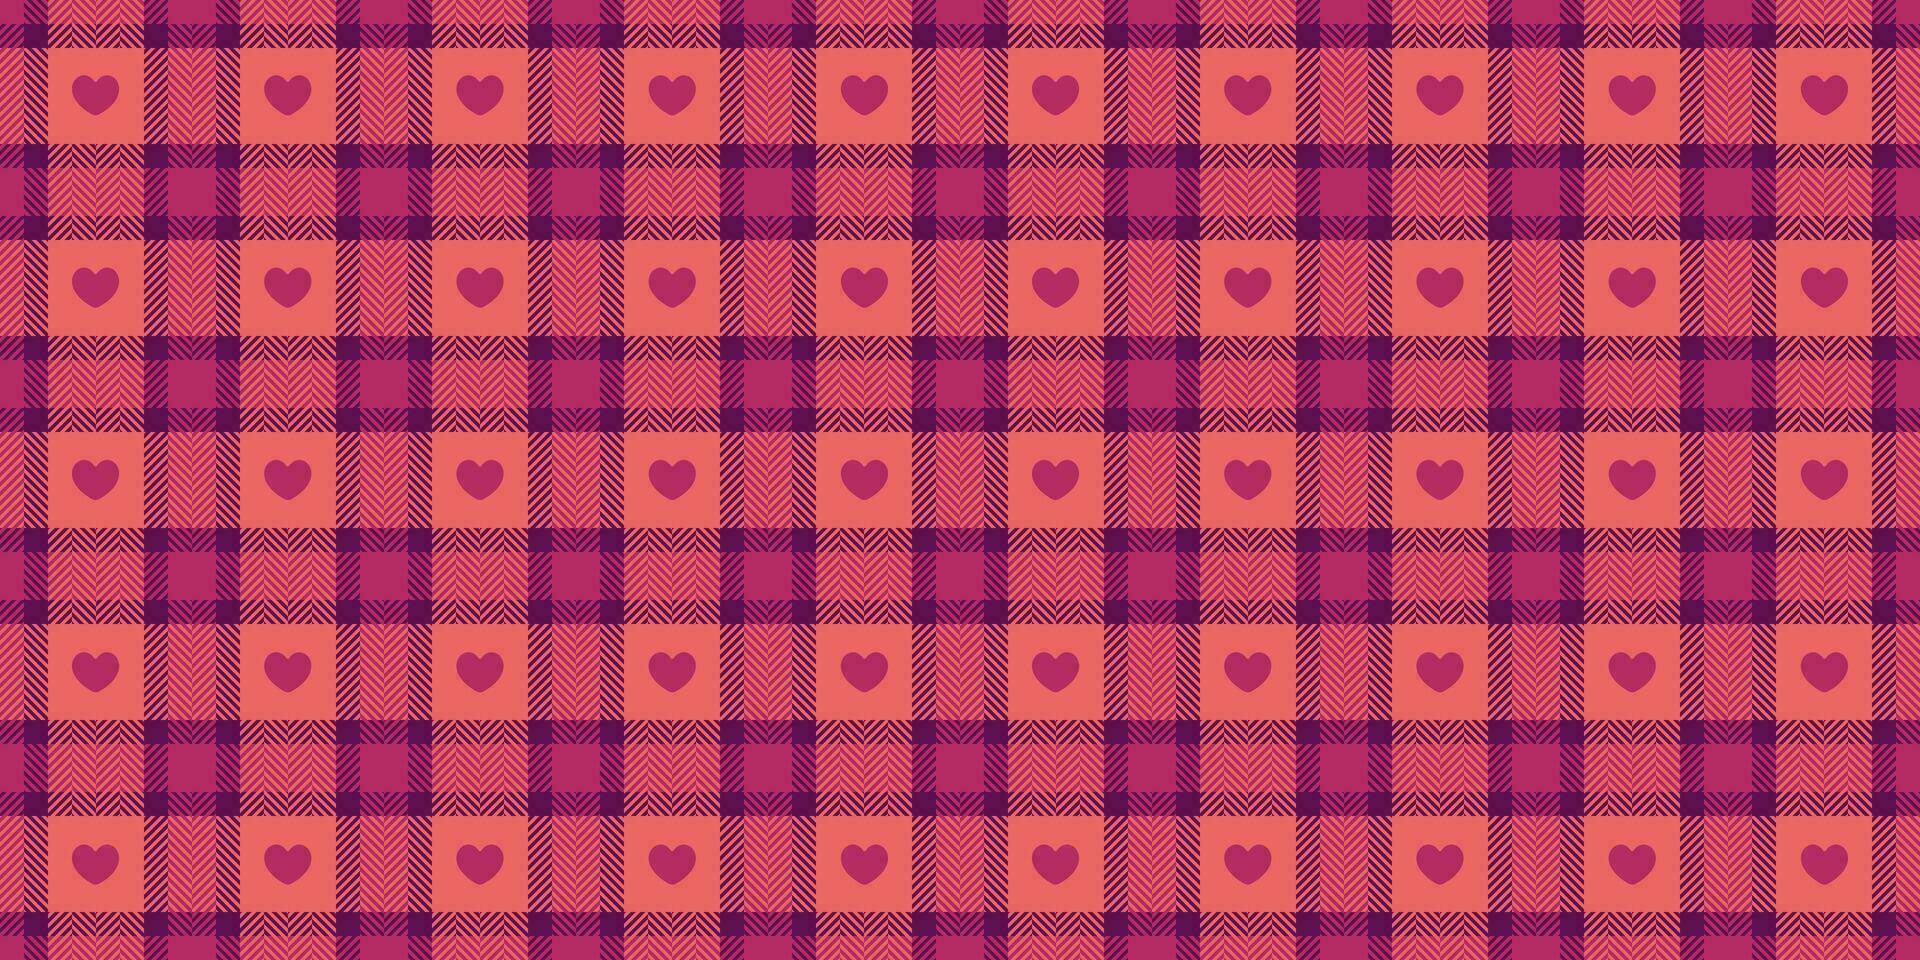 katoenen stof patroon met harten. naadloos Schotse ruit Vichy controleren plaid voor geschenk kaart, omhulsel papier, uitnodiging Aan valentijnsdag dag afdrukken vector